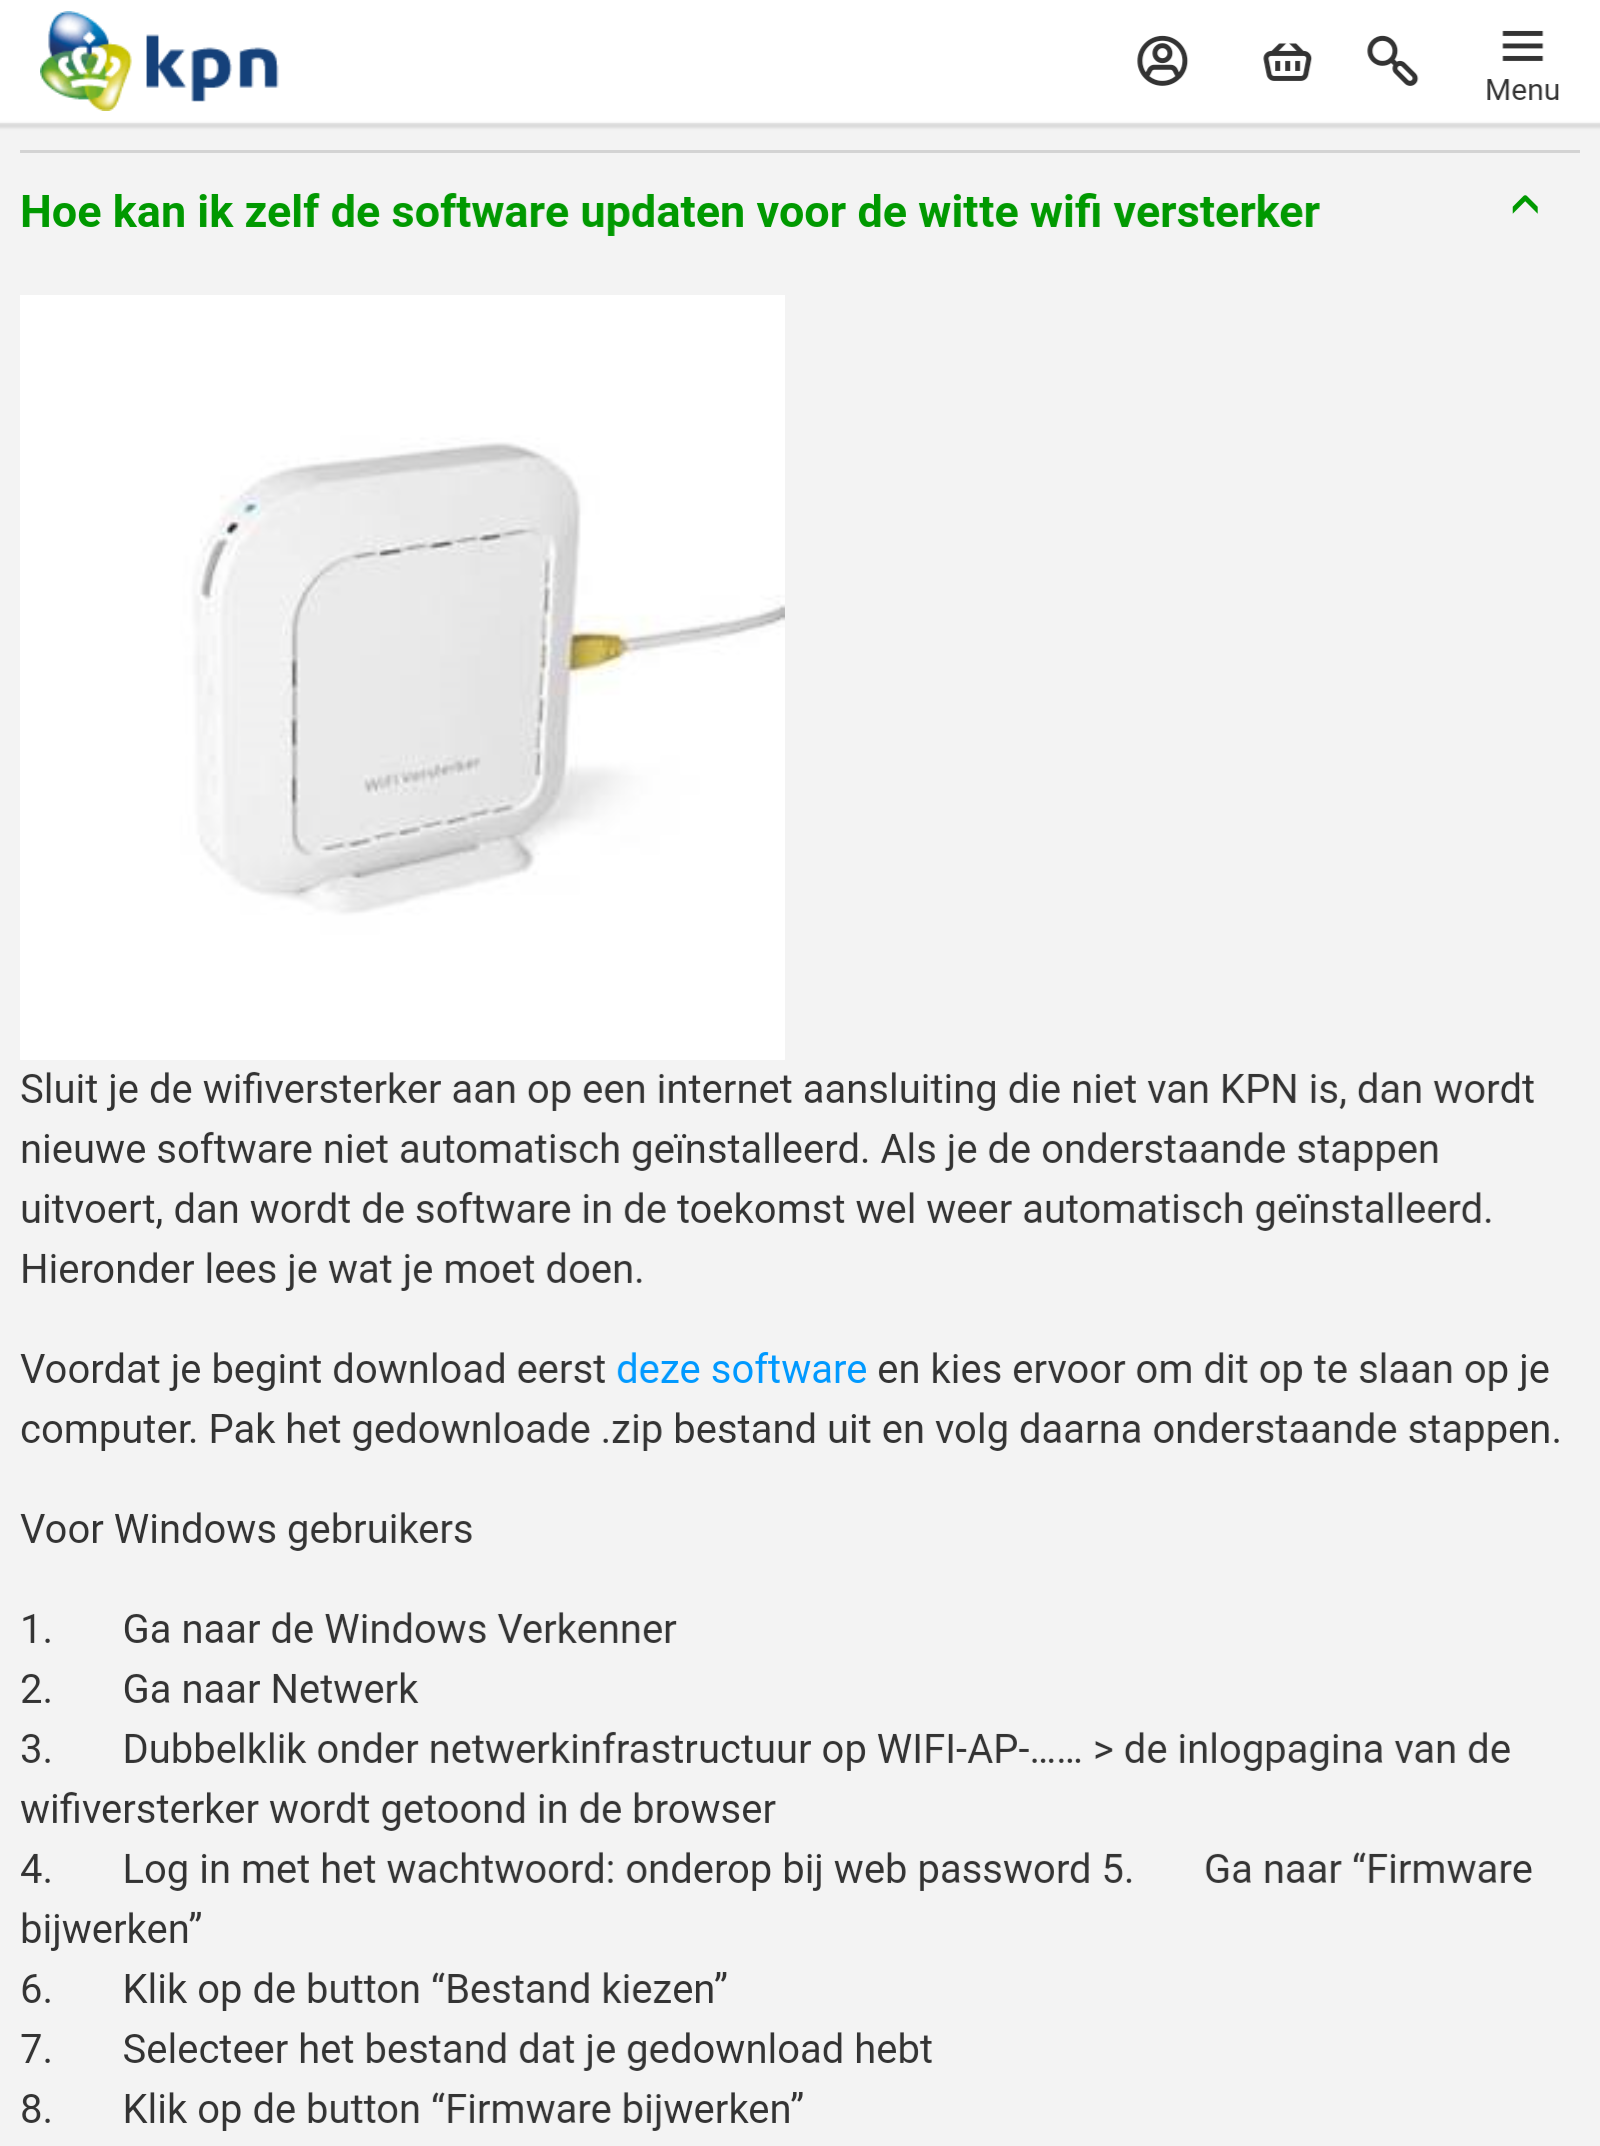 De gasten spiraal persoon Waar kan ik firmware 001.007.86 van de Witte Wifi Versterker downloaden? |  KPN Community